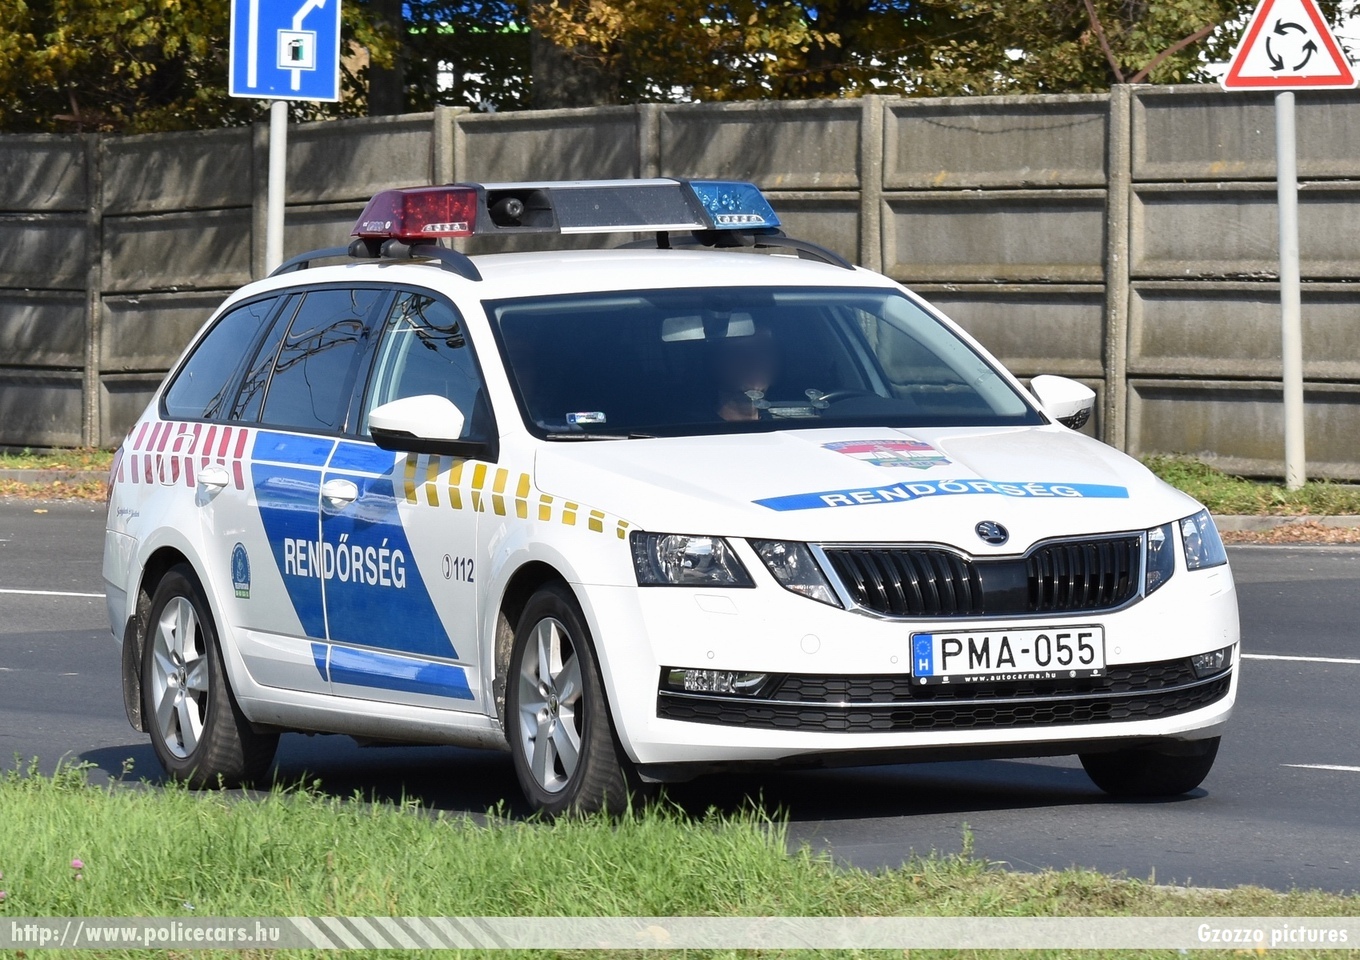 Skoda Octavia III Combi facelift, fotó: Gzozzo pictures
Keywords: rendőr rendőrautó rendőrség magyar Magyarország hungarian Hungary police policecar PMA-055